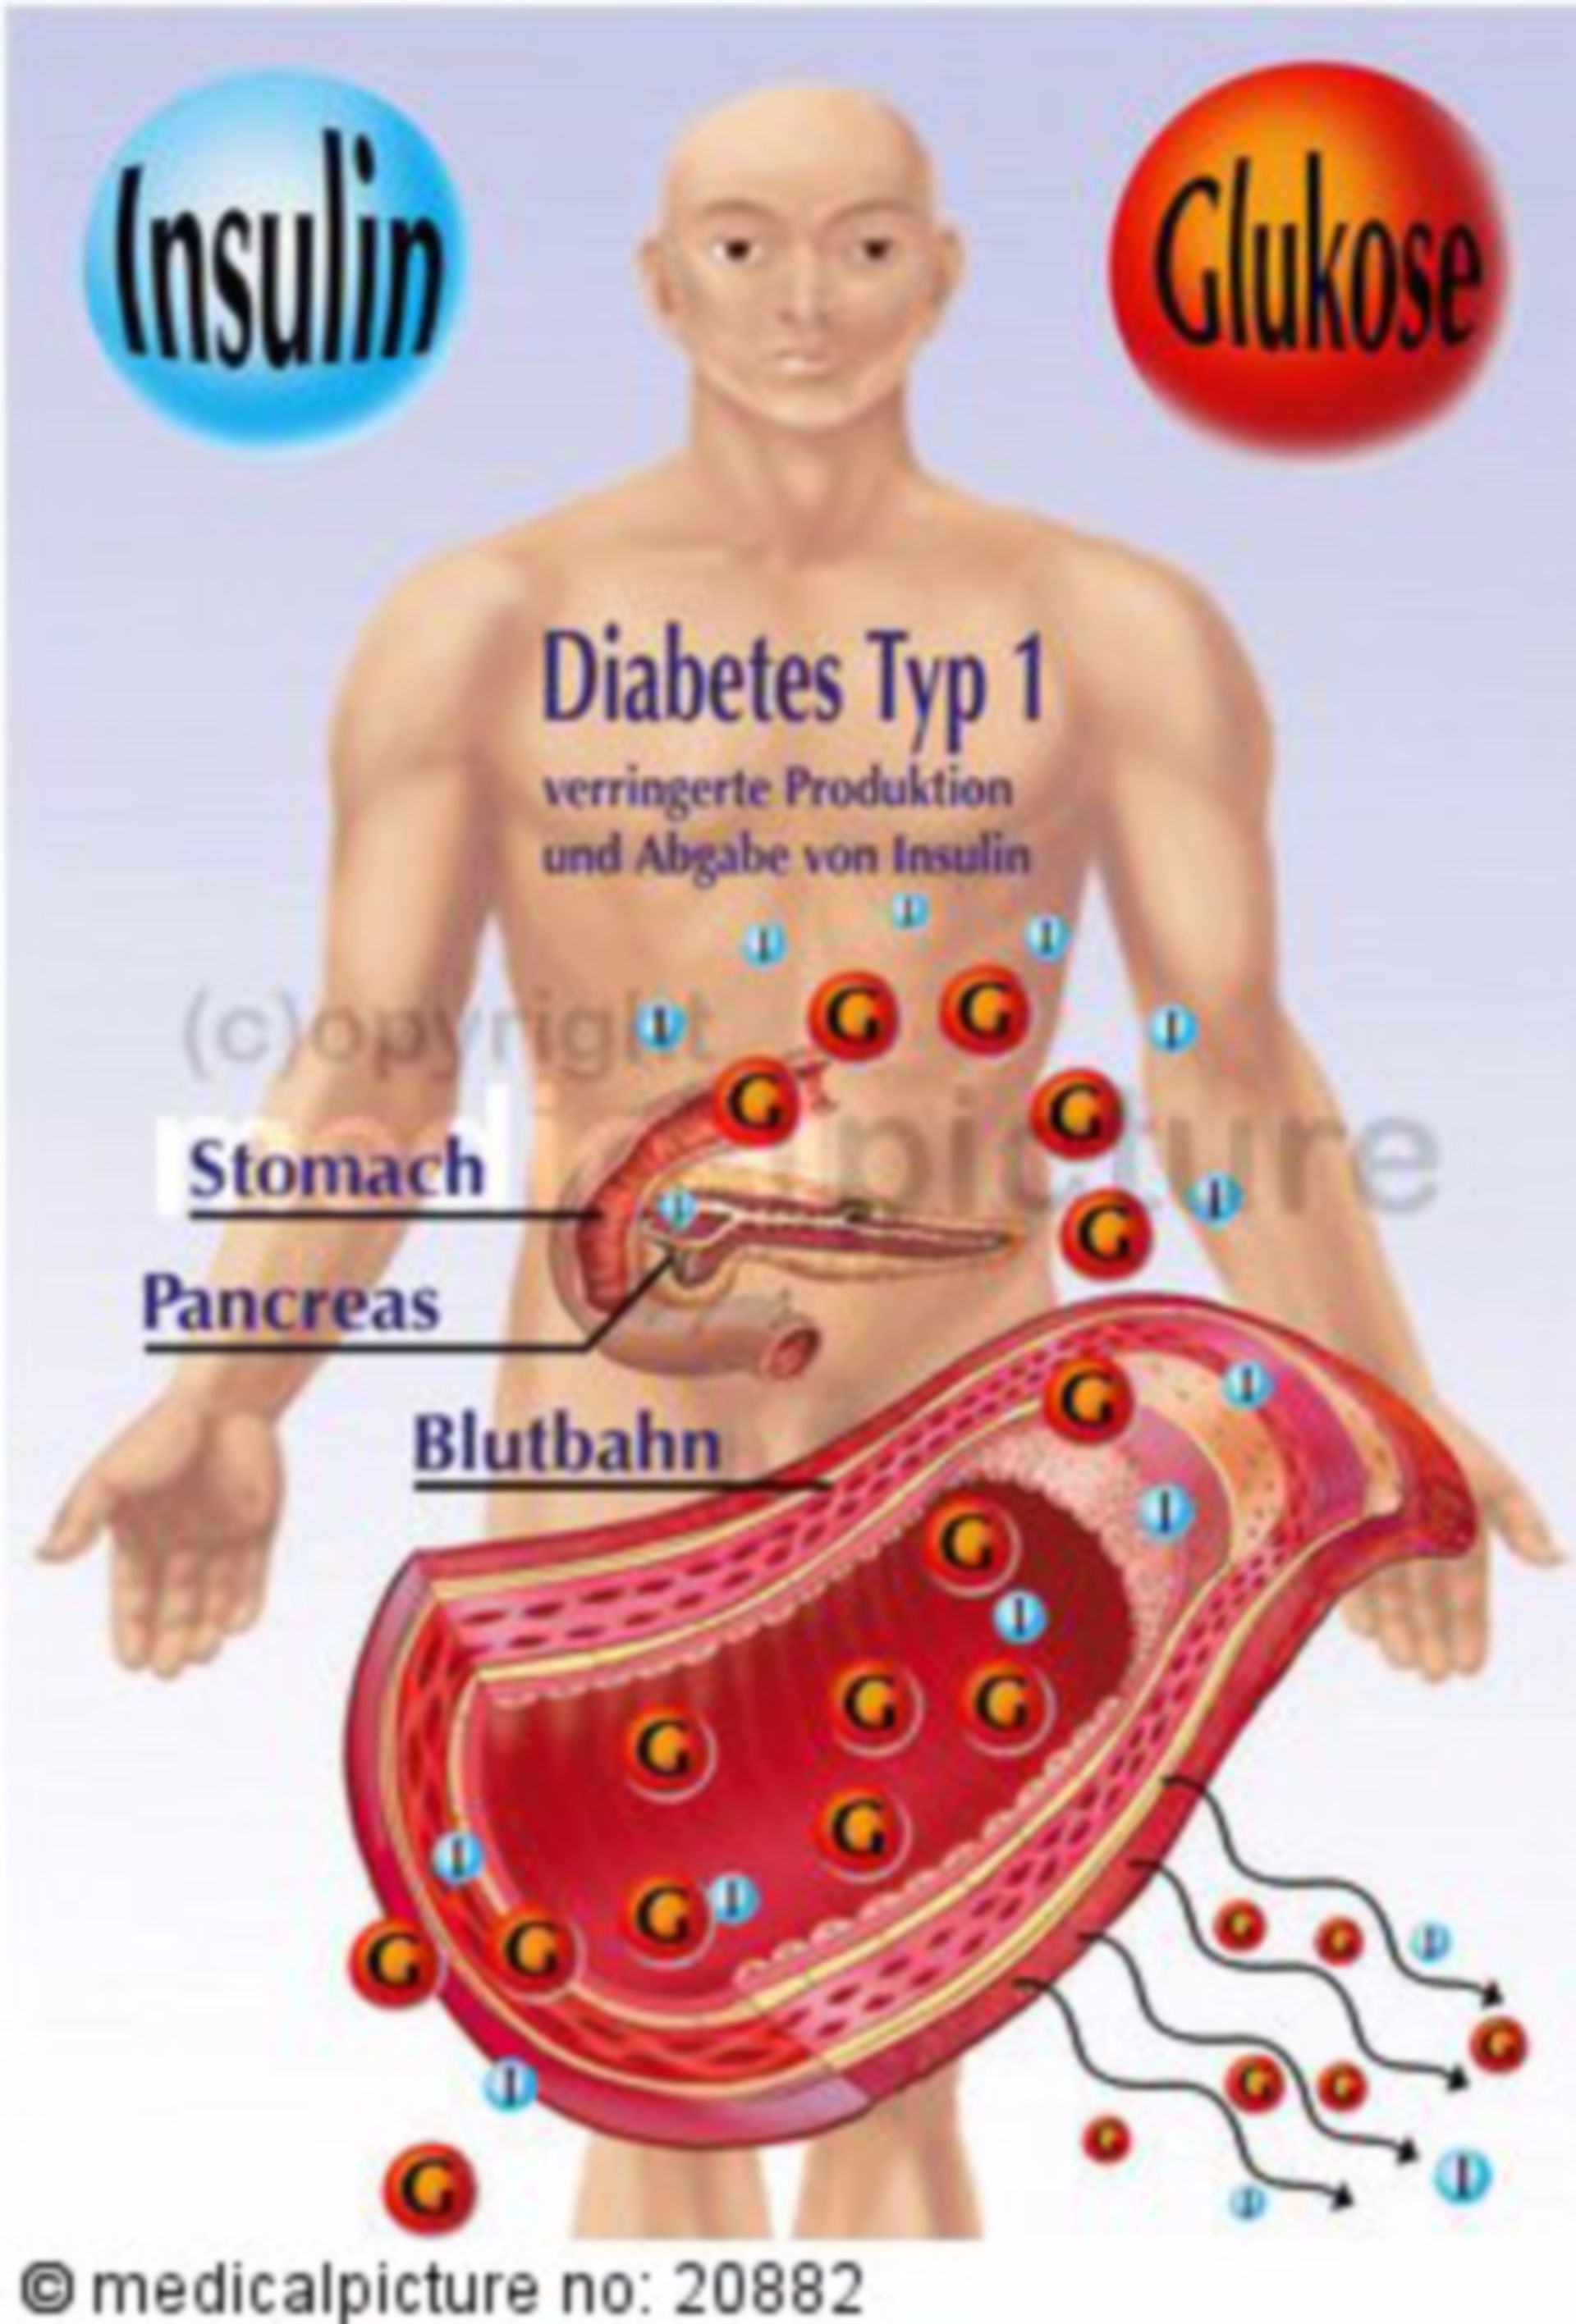 Insulinsekretion bei Menschen mit Typ-1-Diabetes